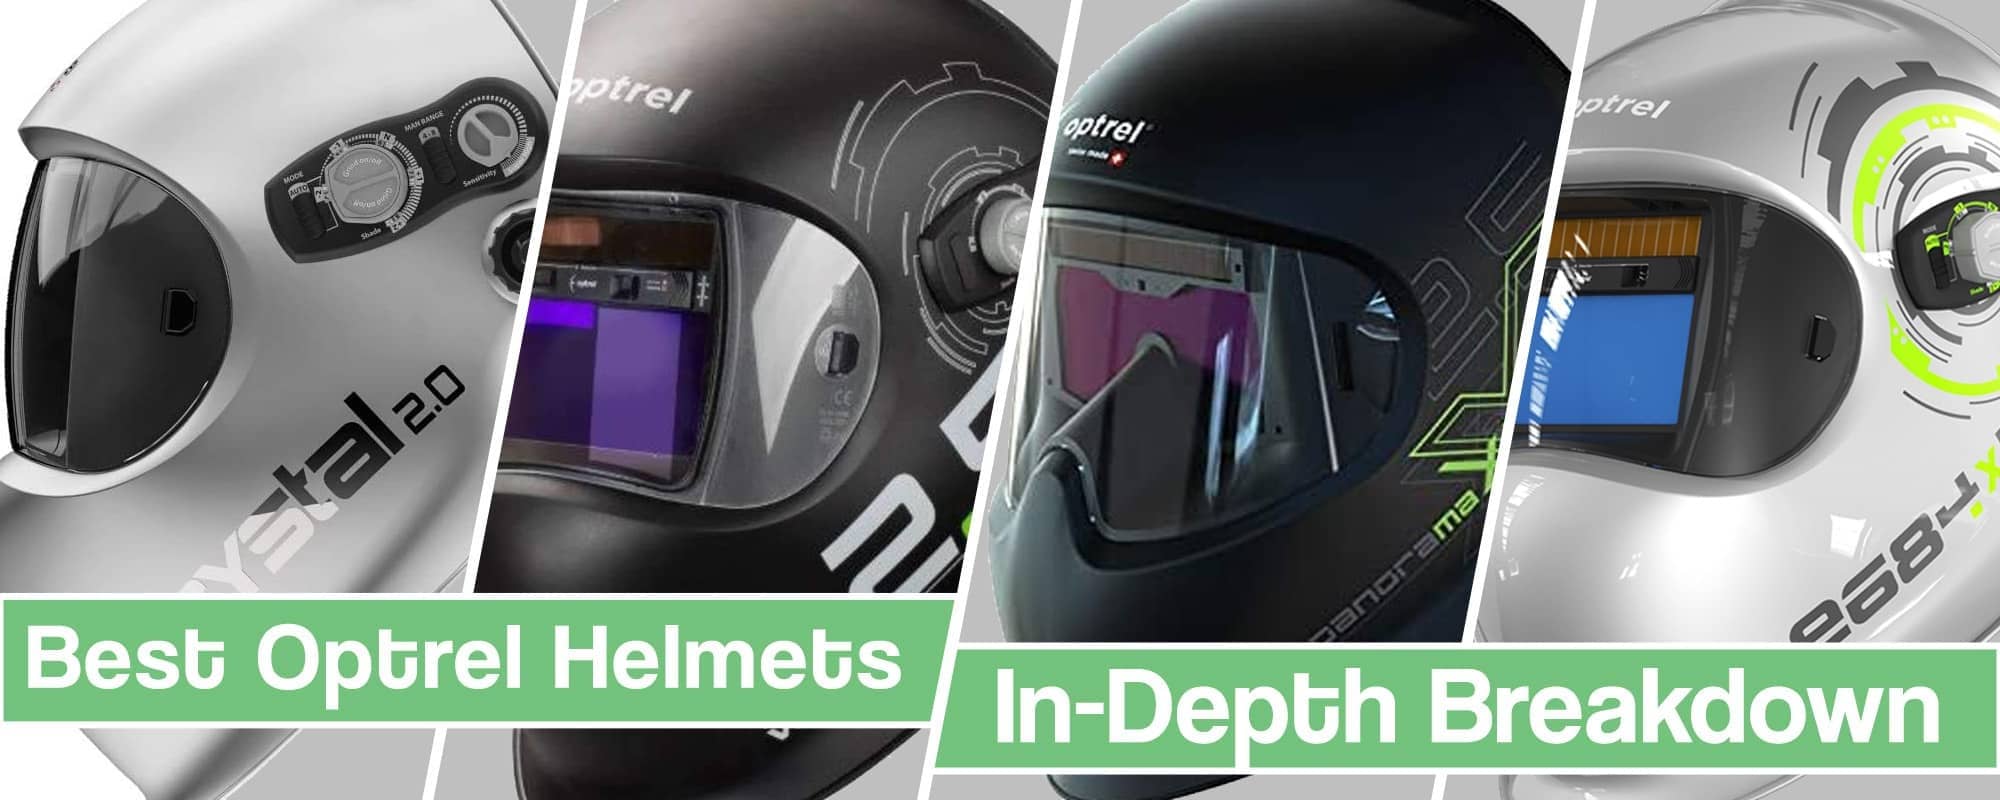 Feature Image for Best Optrel Welding Helmet article